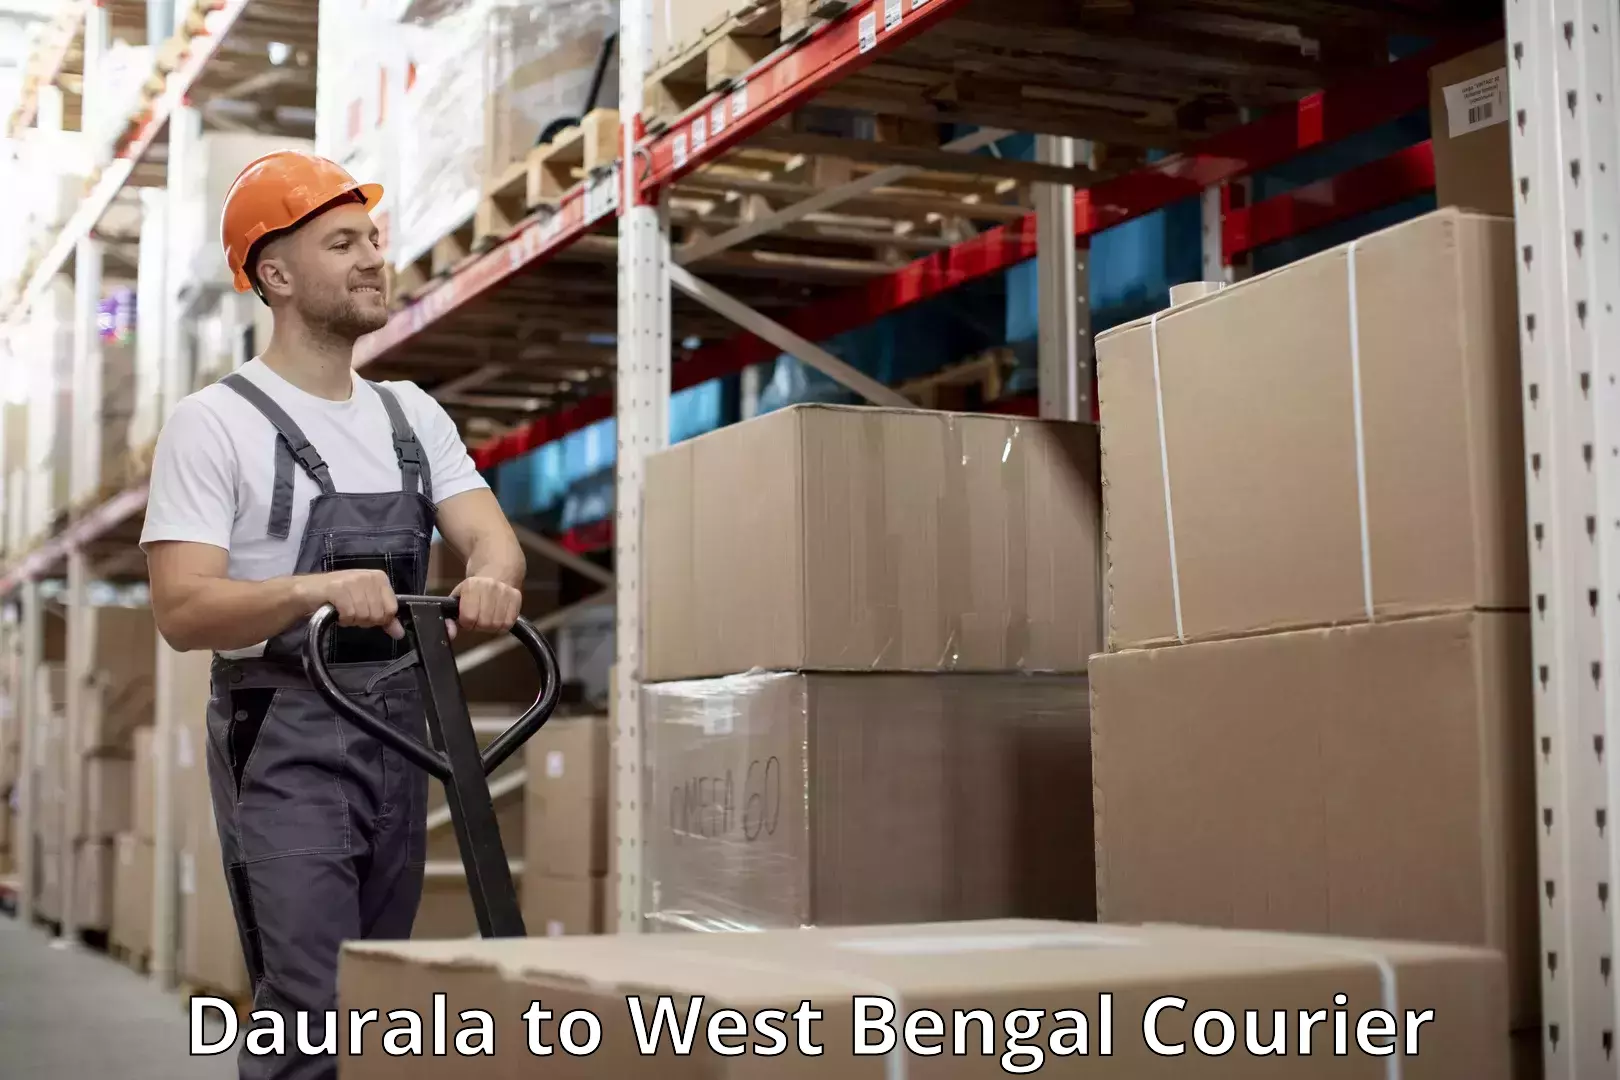 Baggage transport scheduler Daurala to West Bengal